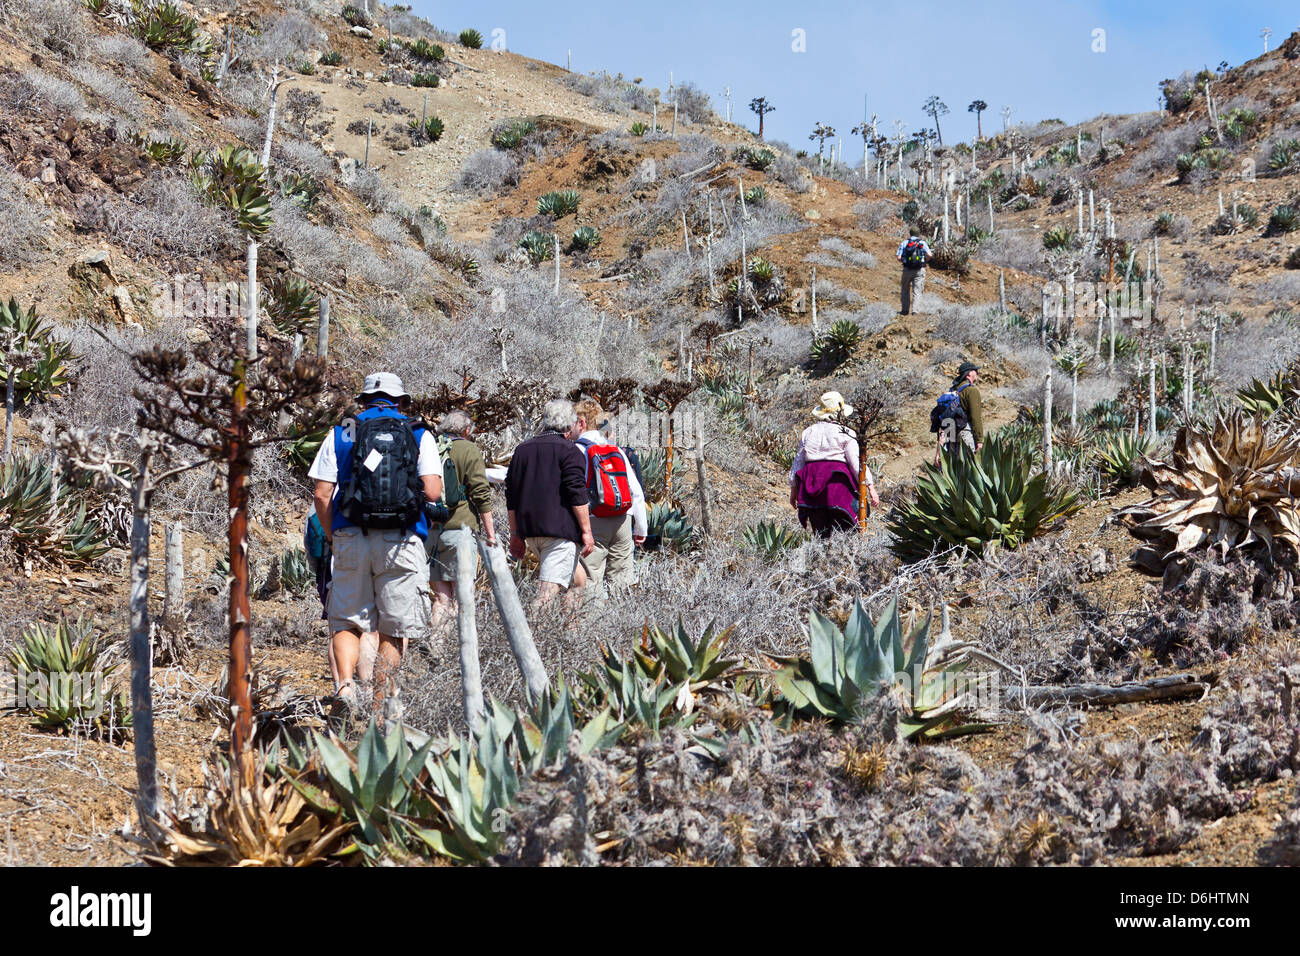 Ecotourists on a nature walk on Isla San Benito Oeste, Baja California Norte, Mexico Stock Photo